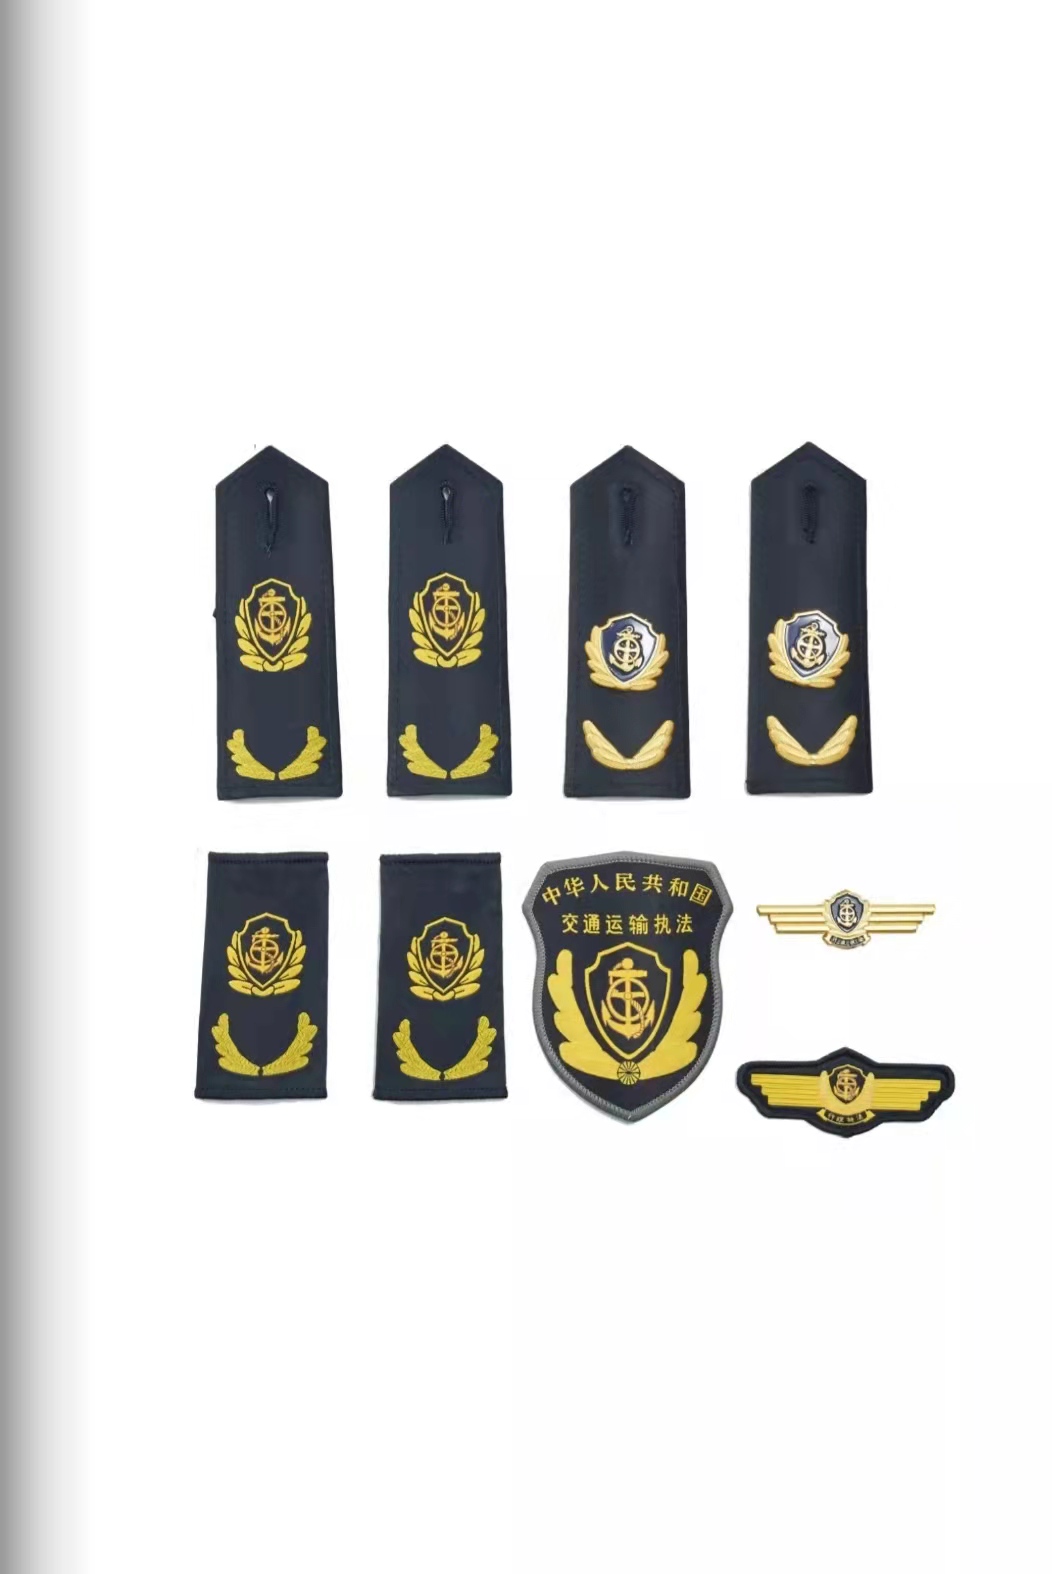 新乡六部门统一交通运输执法服装标志